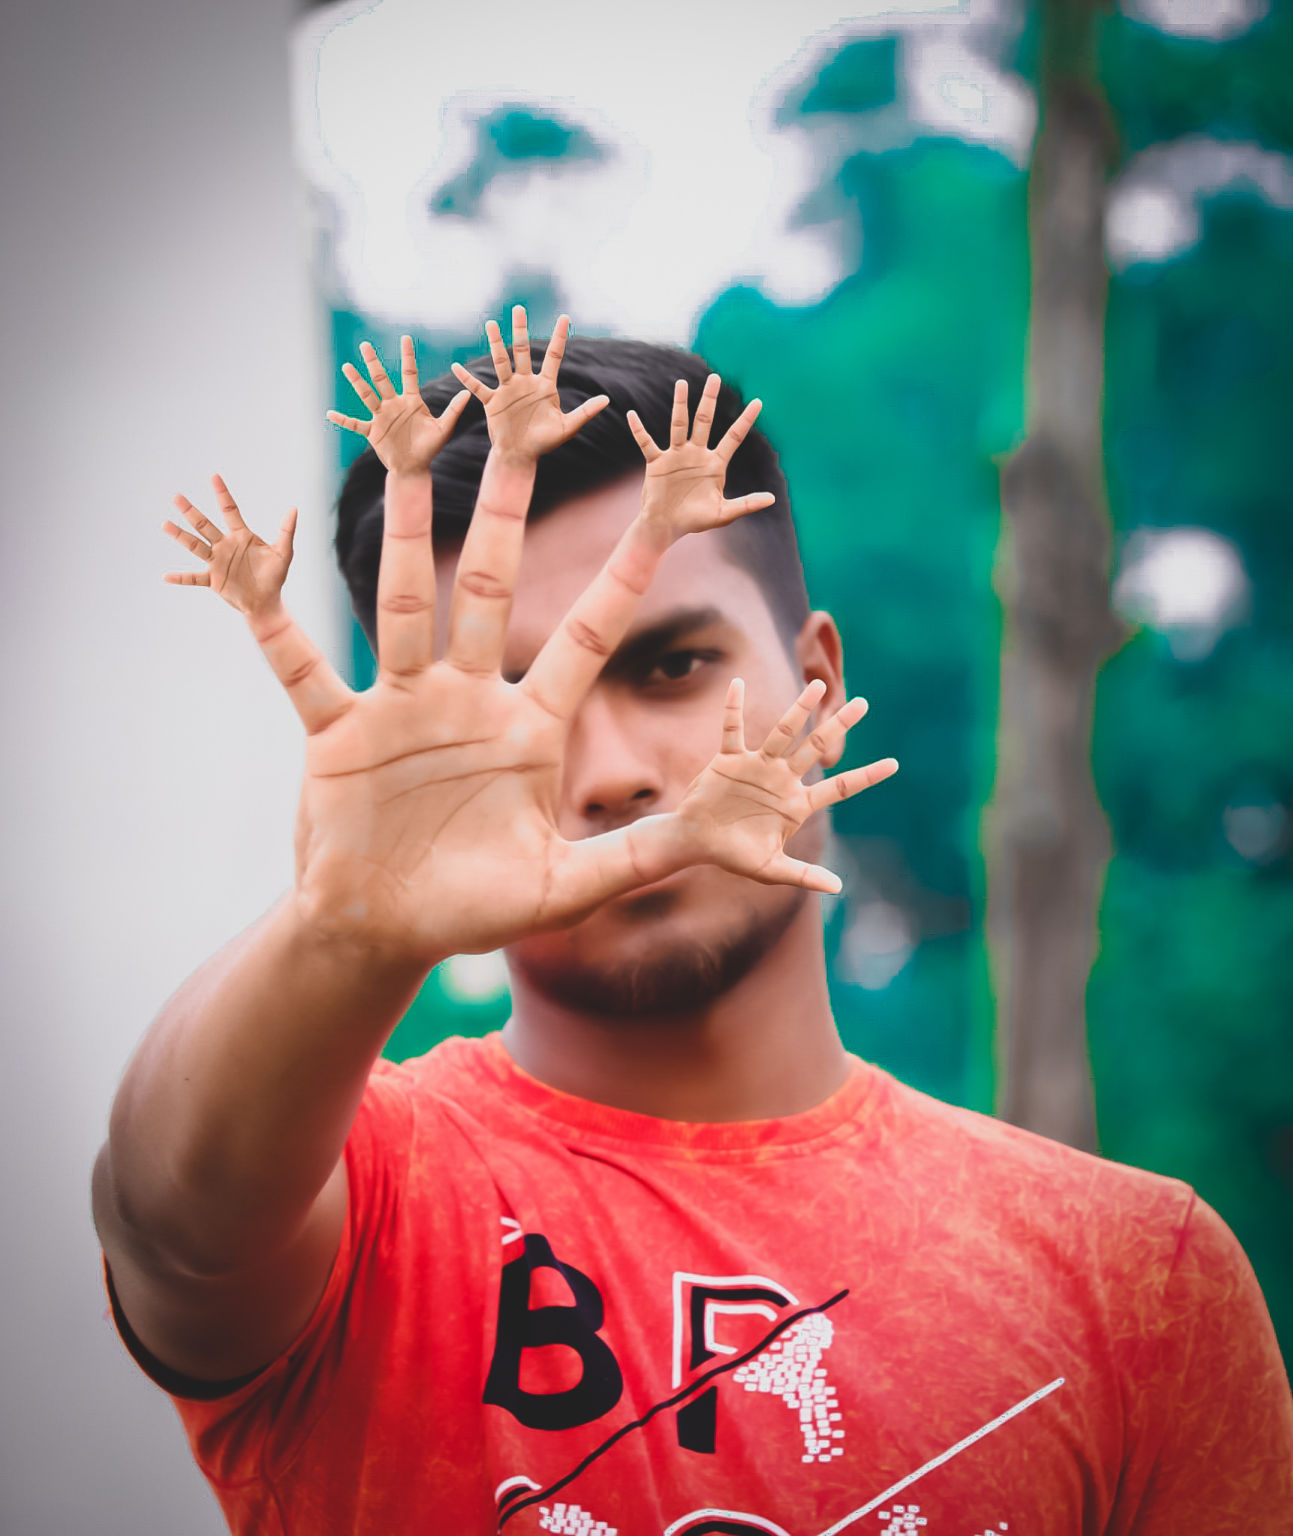 অসাধারণ একটি ফটো ইডিটিং টিউটোরিয়াল। আশা করি সবাই দেখবেন। Creative Hand & Finger Photo Editing.